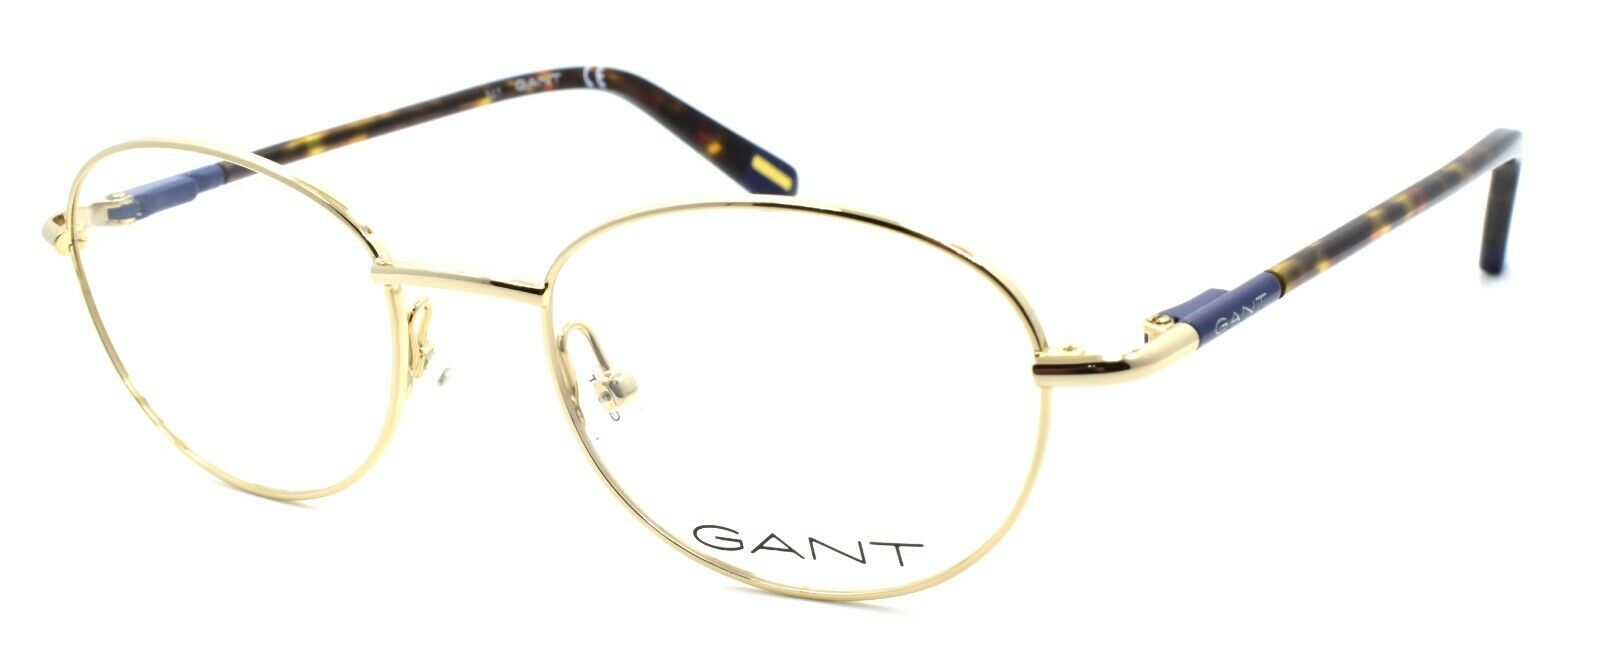 1-GANT GA3131 032 Men's Eyeglasses Frames 48-18-140 Pale Gold-664689837625-IKSpecs